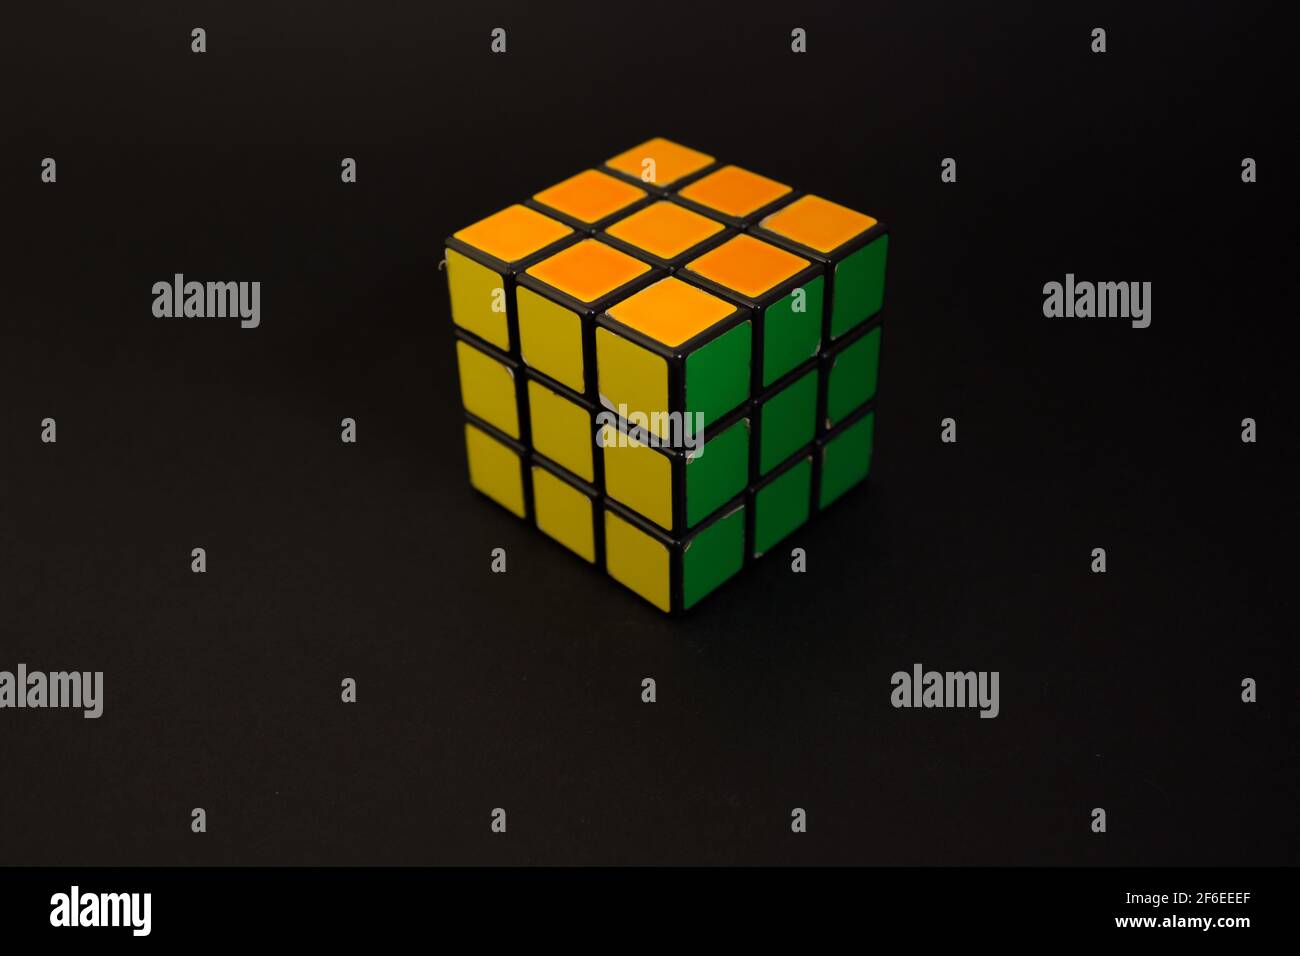 Avola, Italien - März 31st 2021: Nahaufnahme eines gelösten Rubik-Würfels auf schwarzem Hintergrund. Das Objekt zeigt seine gelben, orangefarbenen und grünen Gesichter. Es war Inv Stockfoto